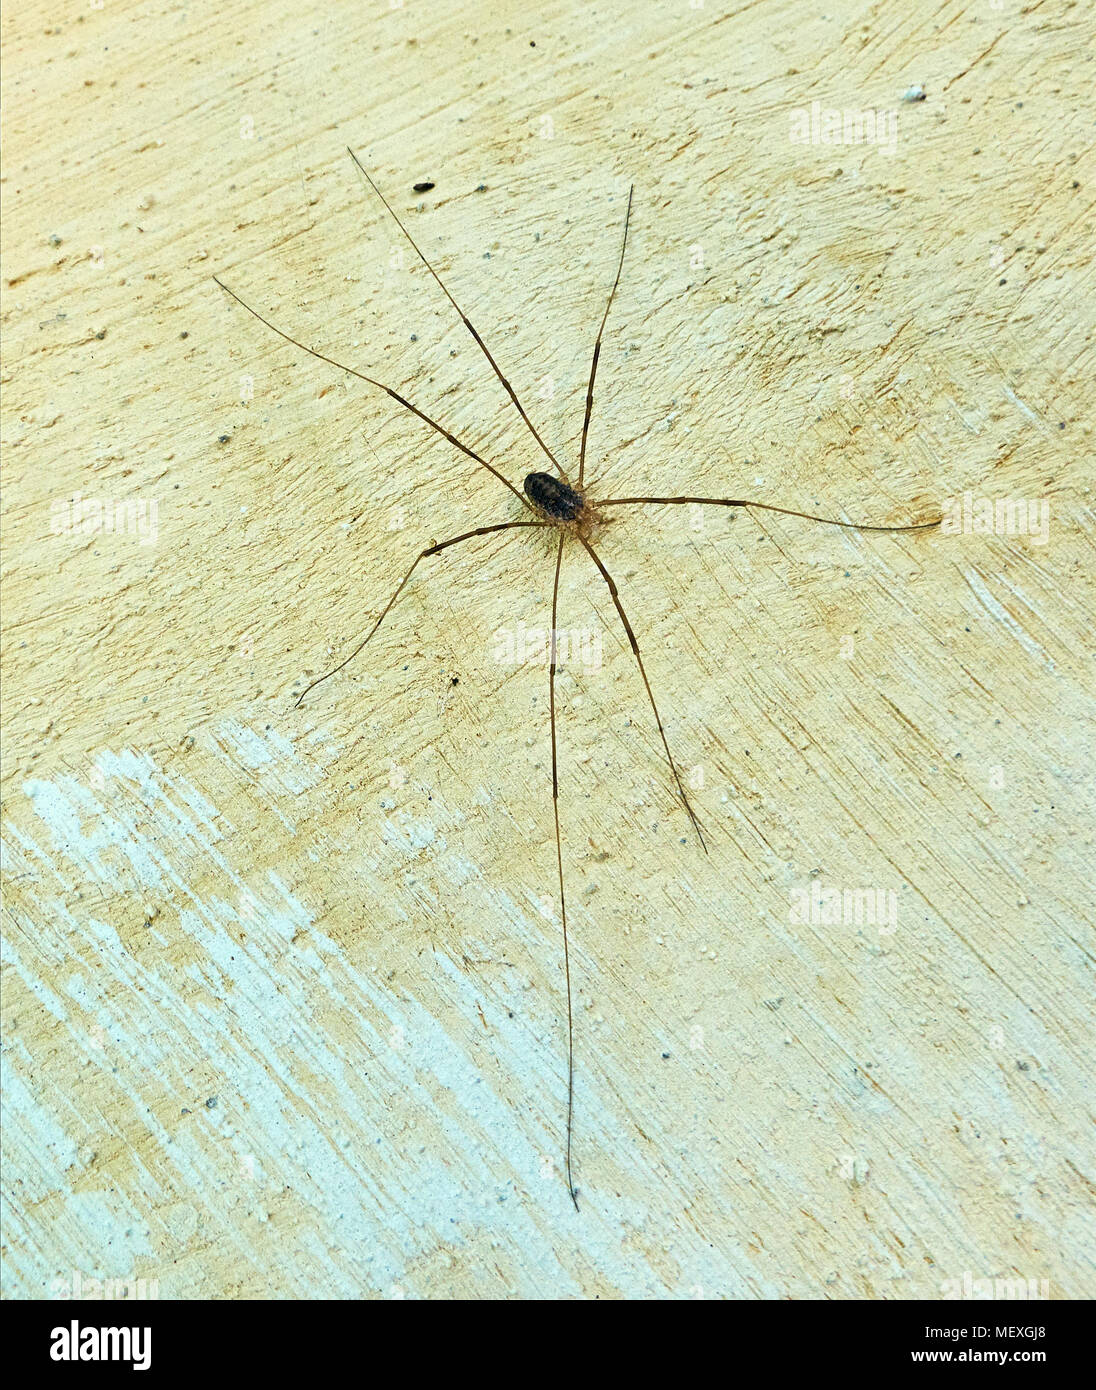 Hohe Betrachtungswinkel auf die Kleine braune Spinne sitzen auf der Mauer  seine Beine Verbreitung sehr lange Beine Stockfotografie - Alamy